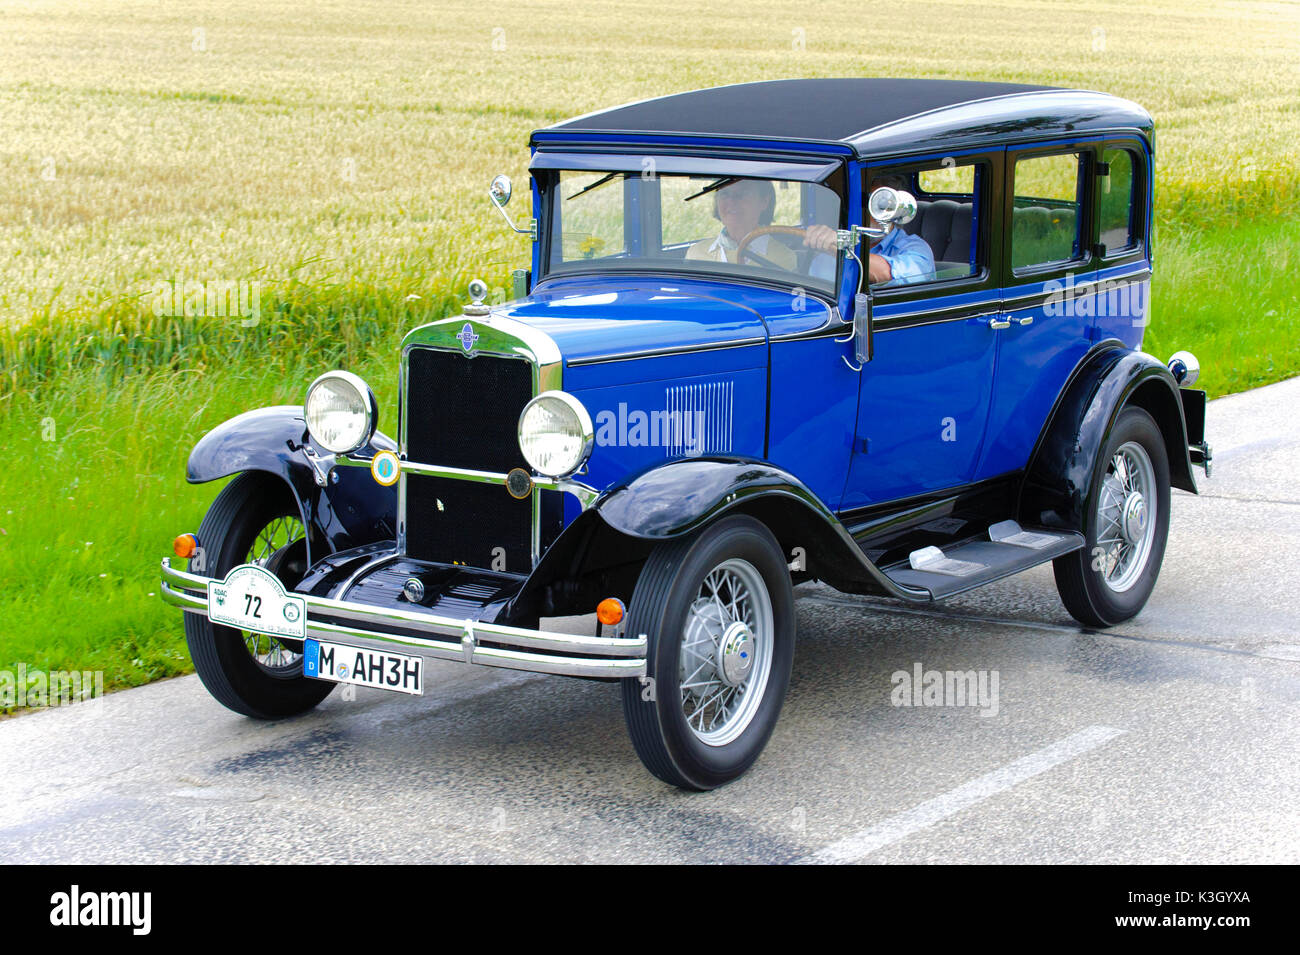 Rallye anciens 'affirmation' Herkomer à Landsberg Lech en pendant au moins 80 ans, voitures, berline Chevrolet ici fermer votre annonce, l'année de fabrication en 1930 Banque D'Images